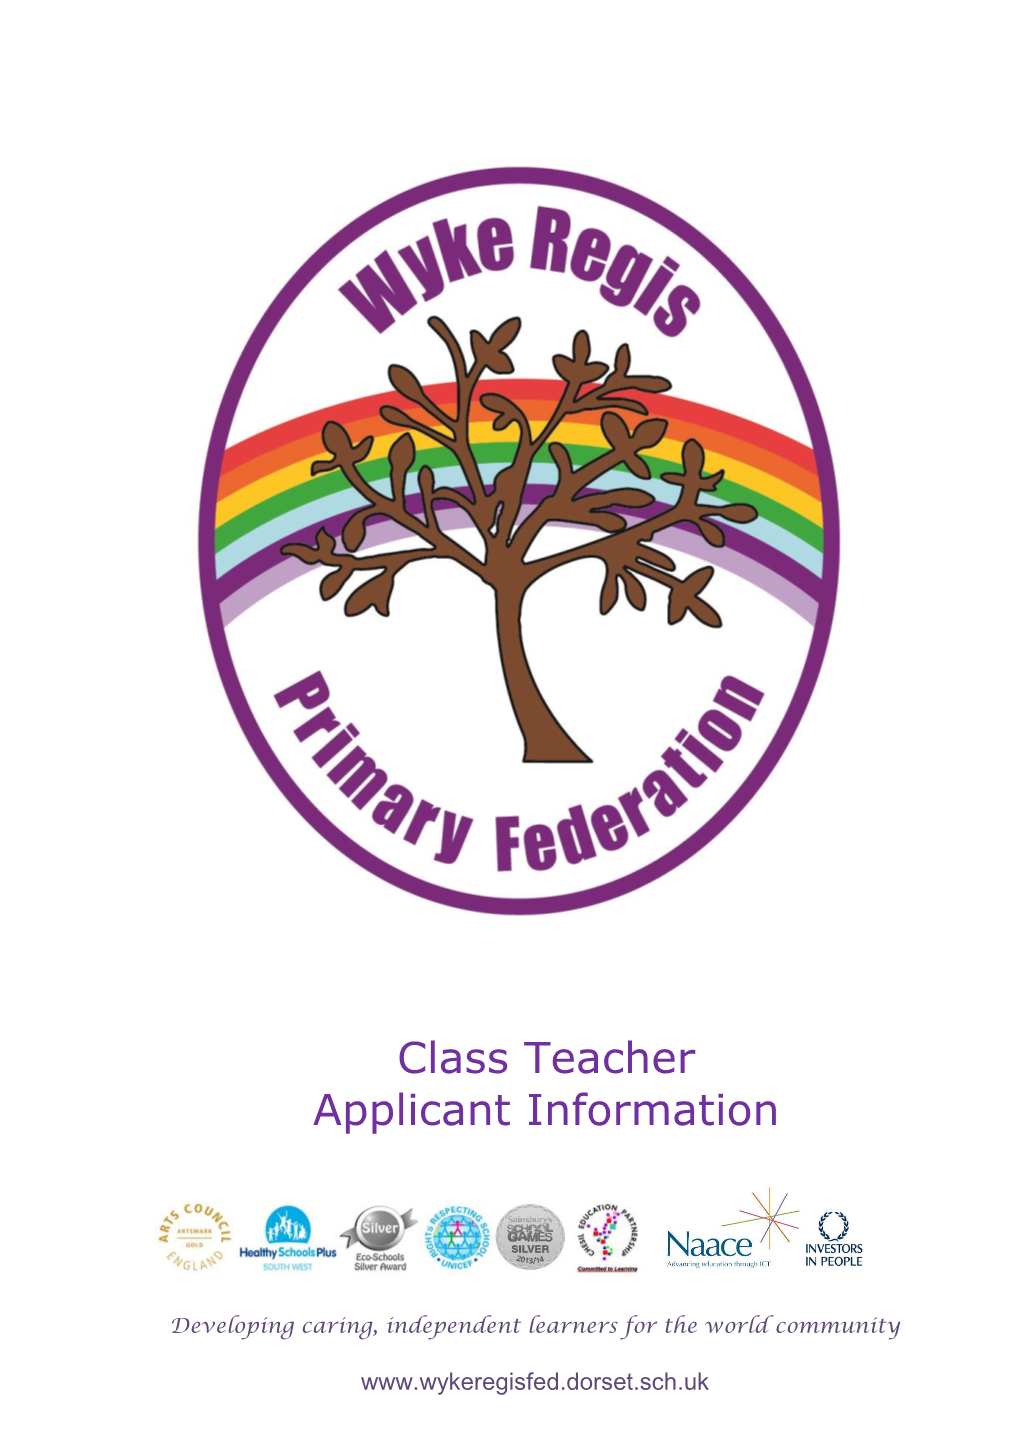 Wyke Regis Primary Federation